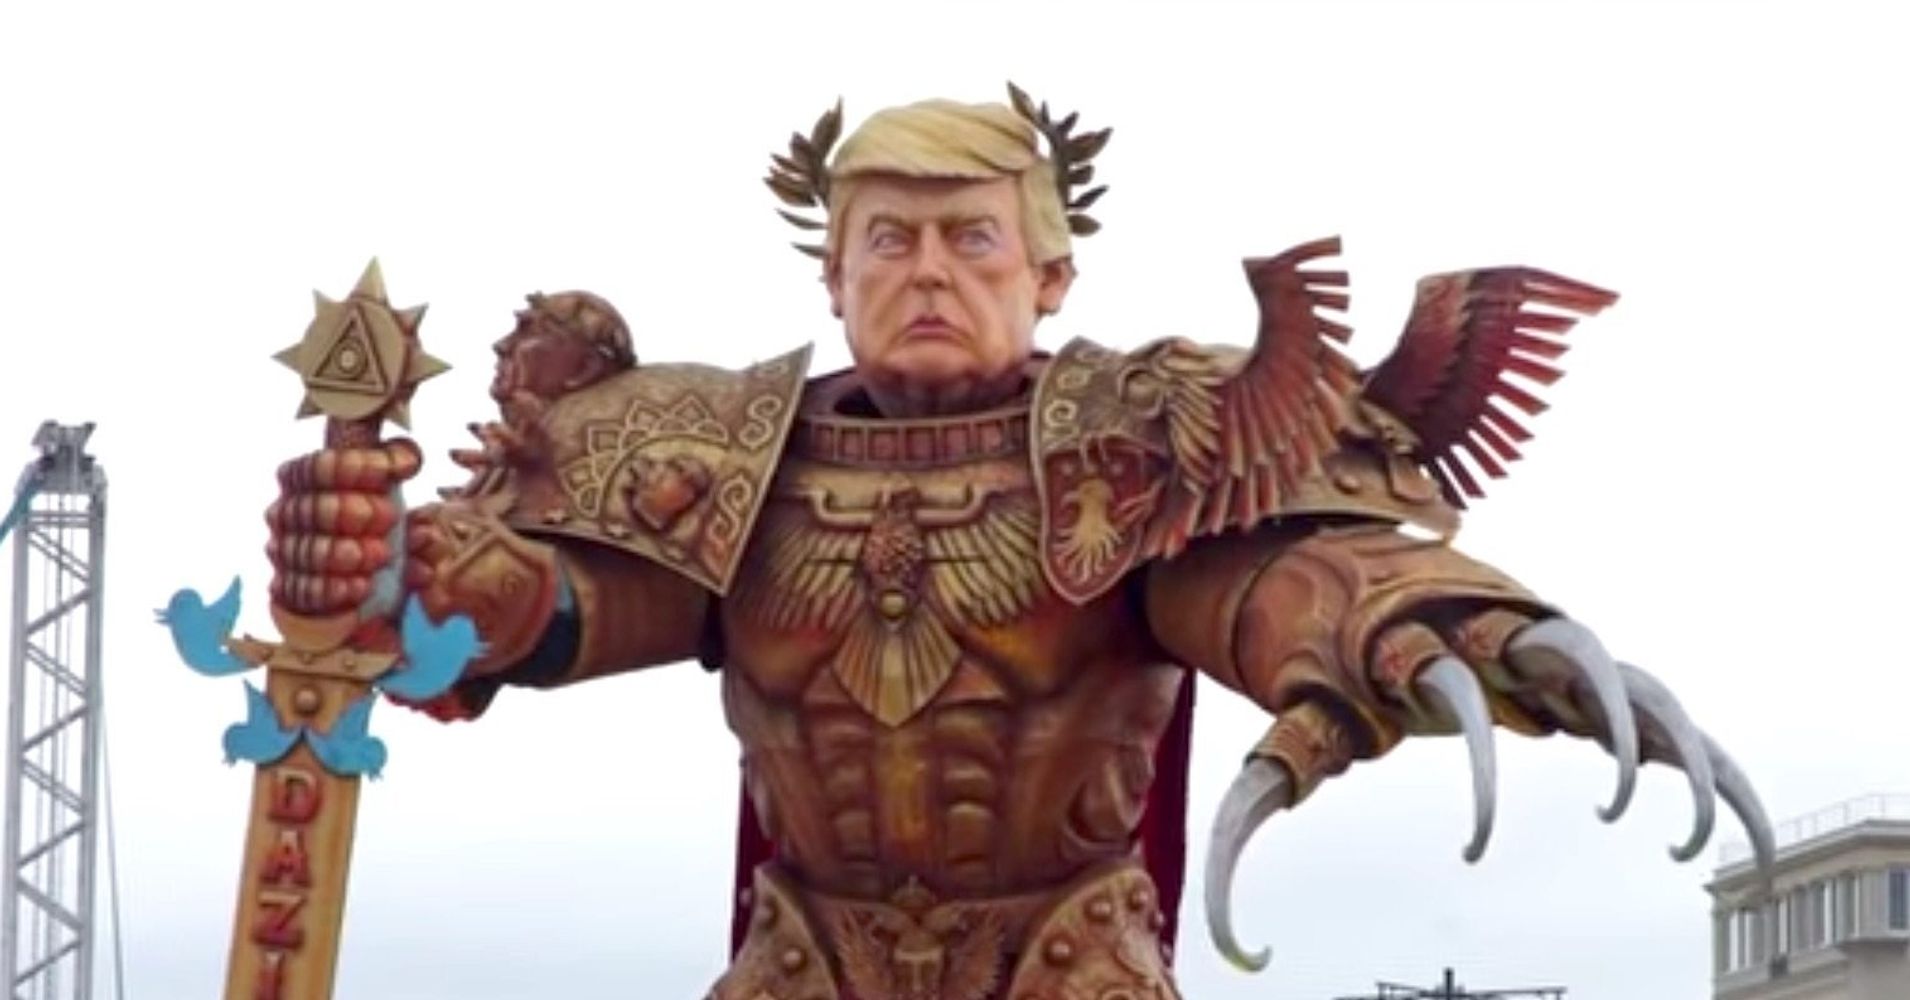 Bildergebnis für trump warhammer emperor parade